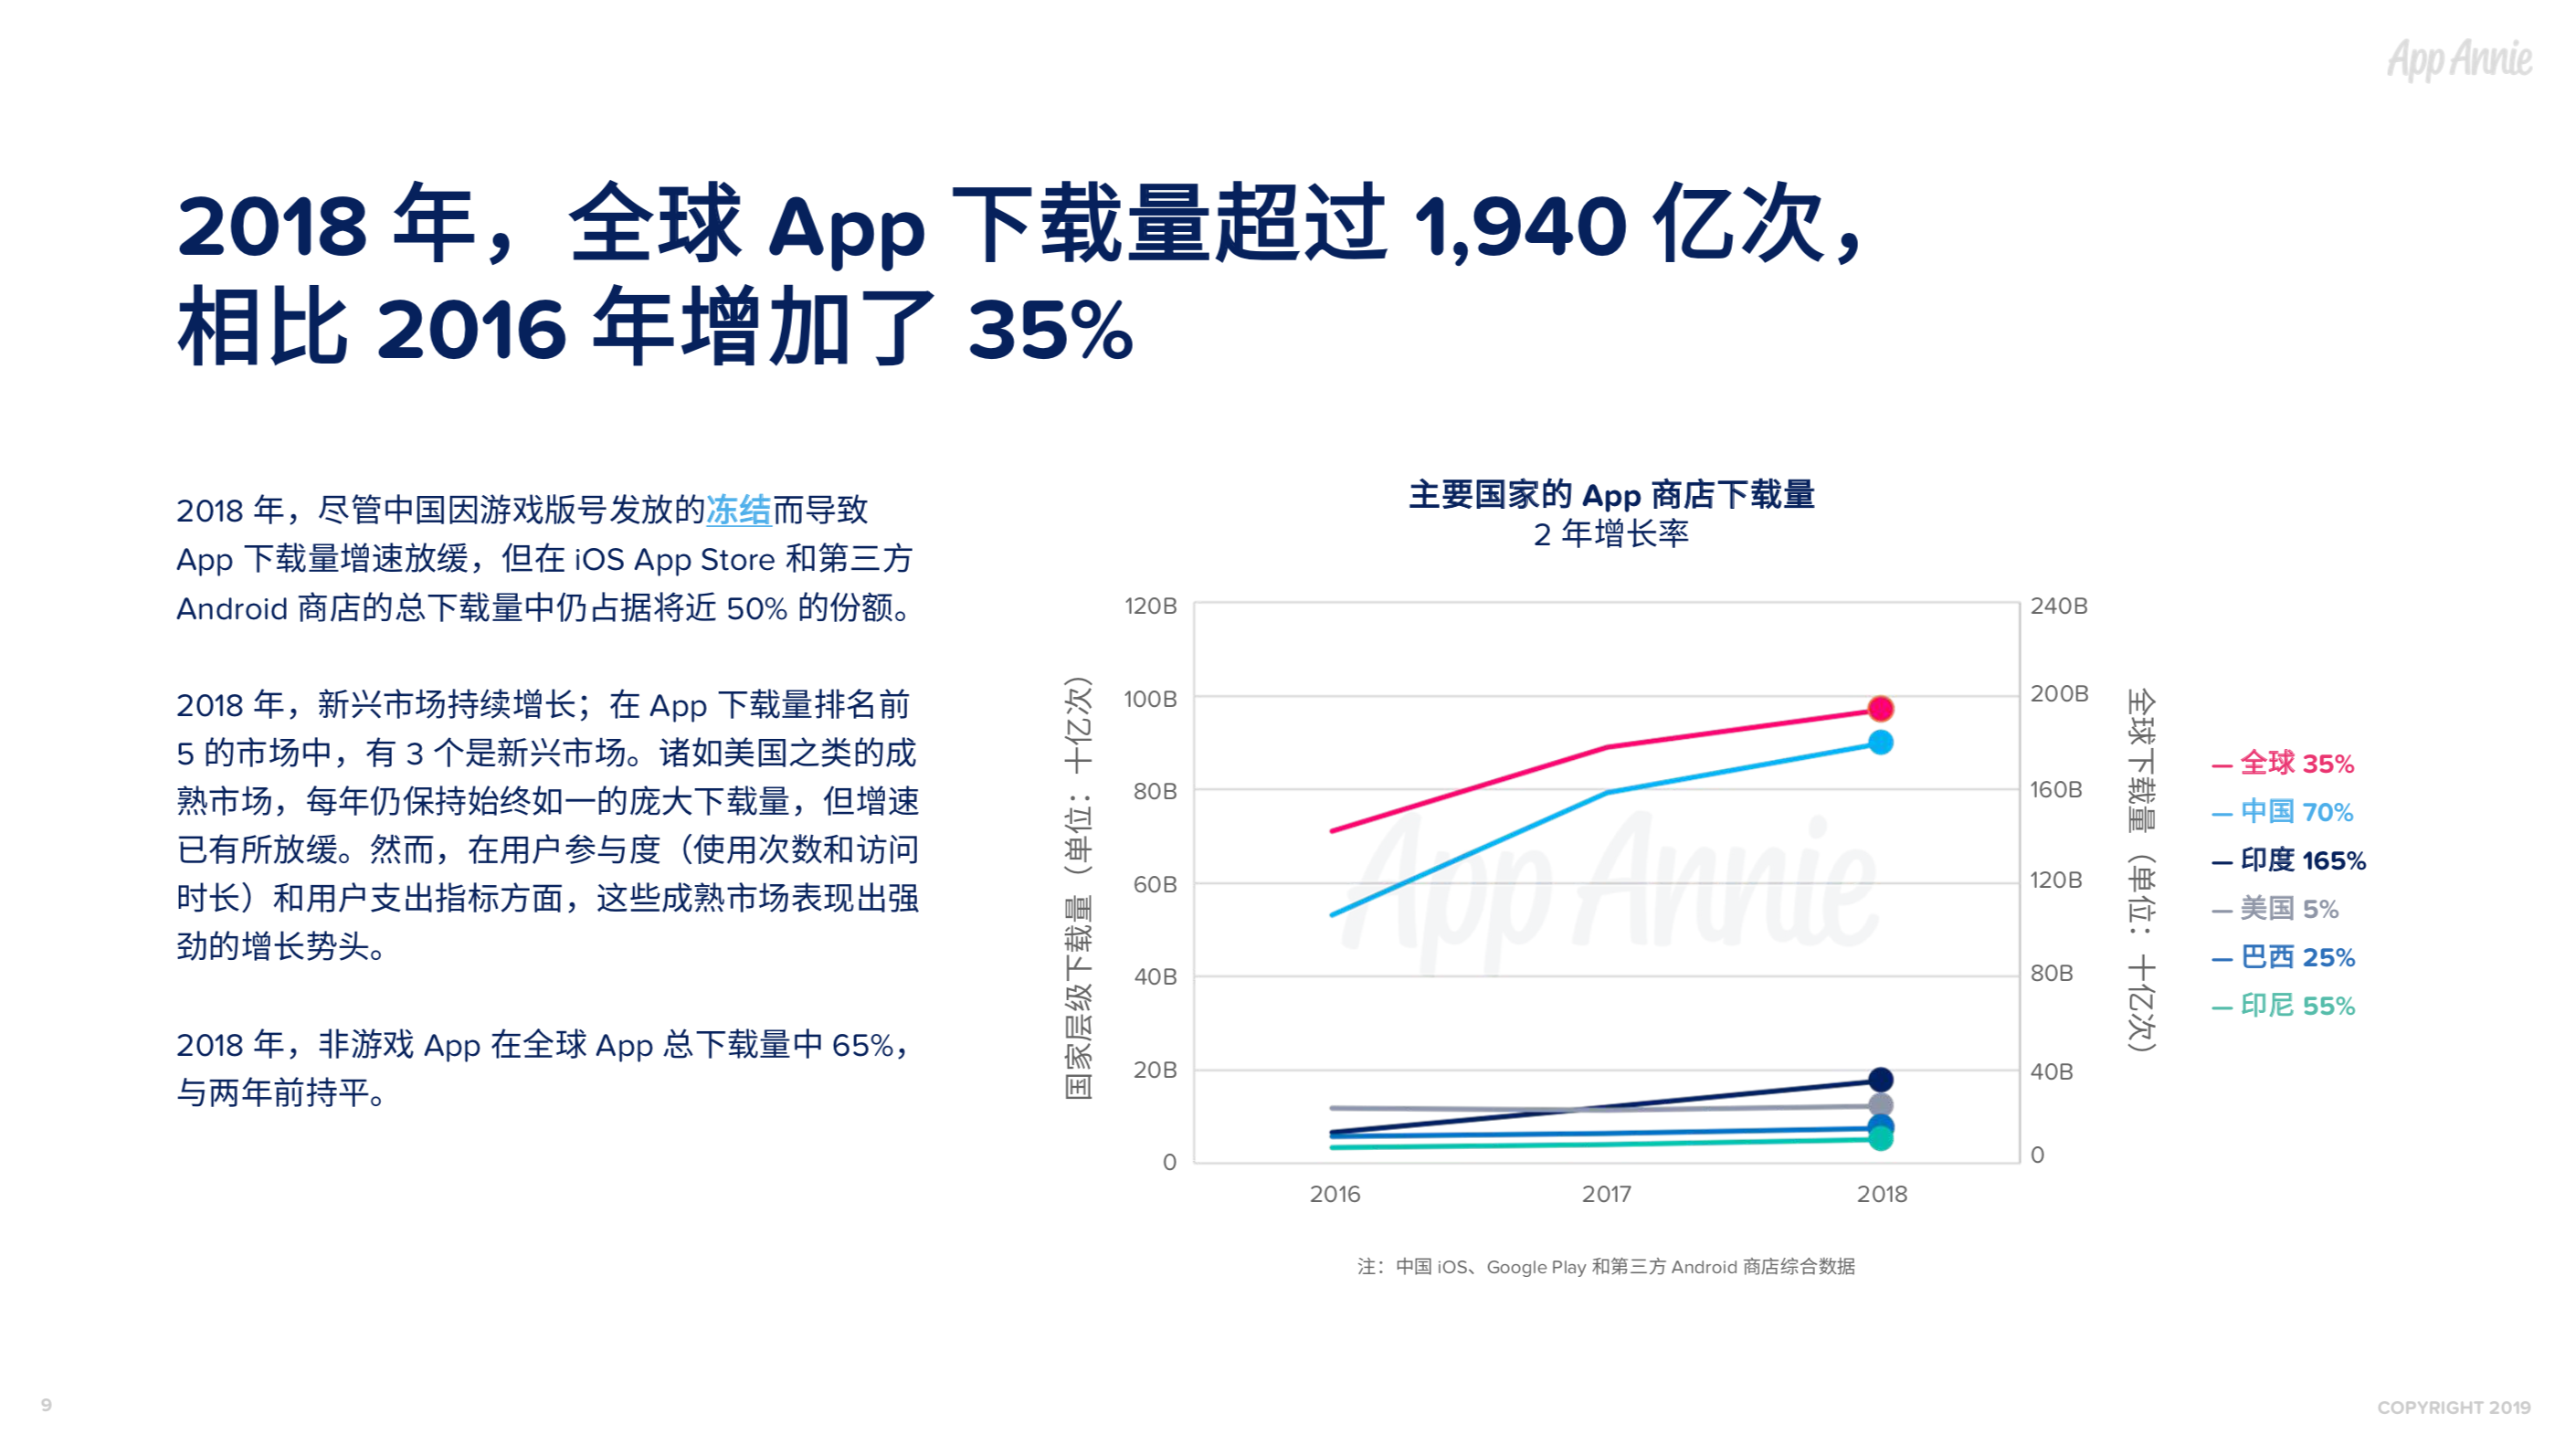 社交通讯App全球使用时长占比过半，视频已经成为预期功能